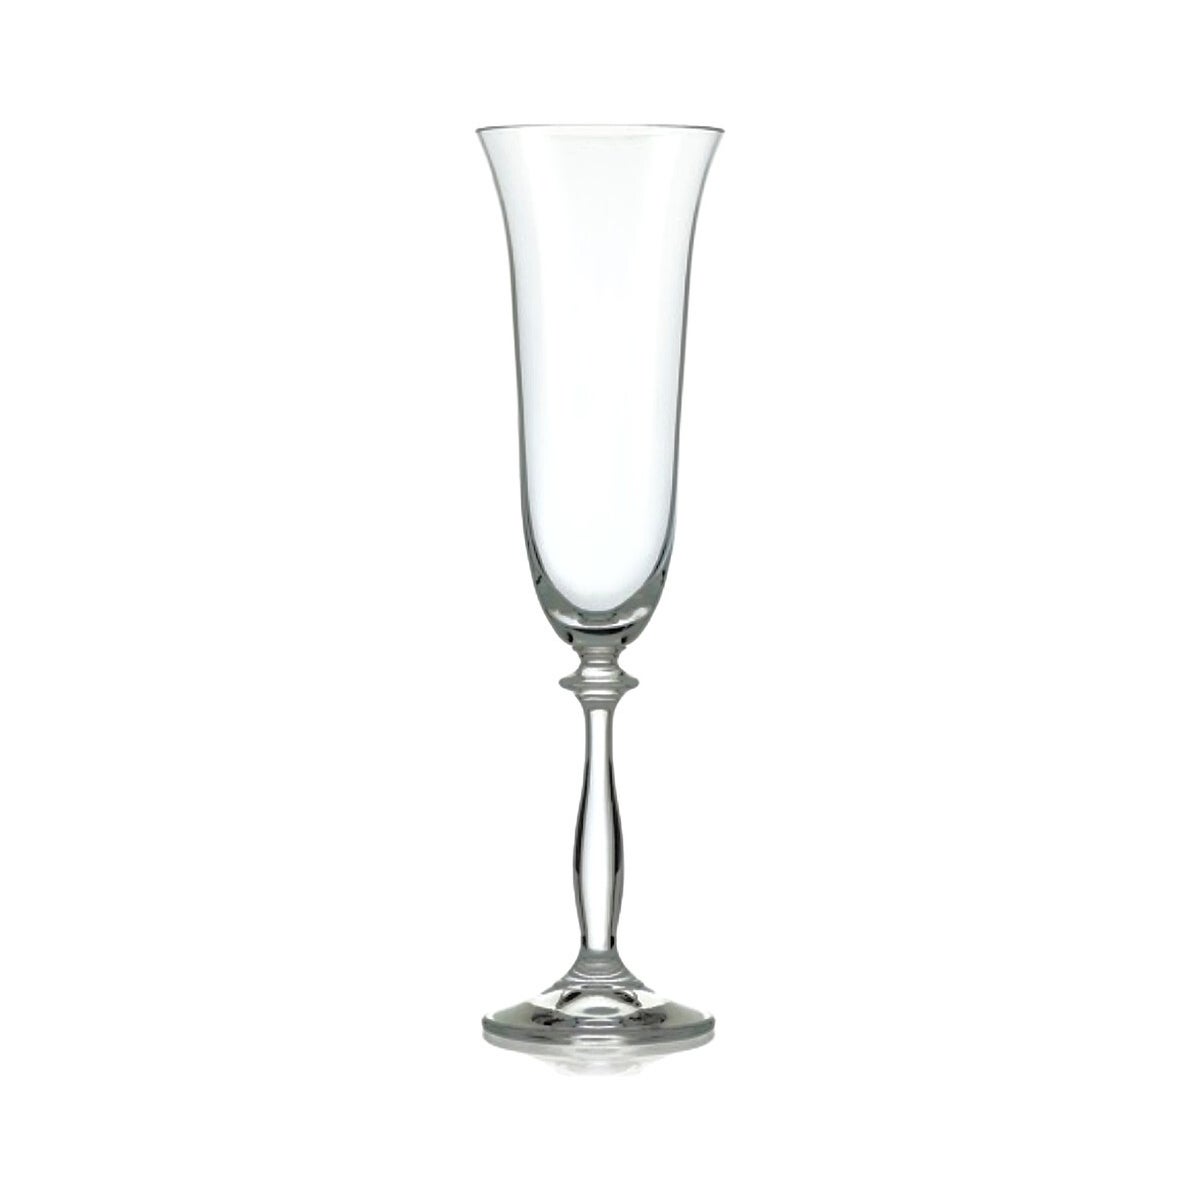 Angela - Bohemia Champagne Glass w/Stem 6pc Set  190ml